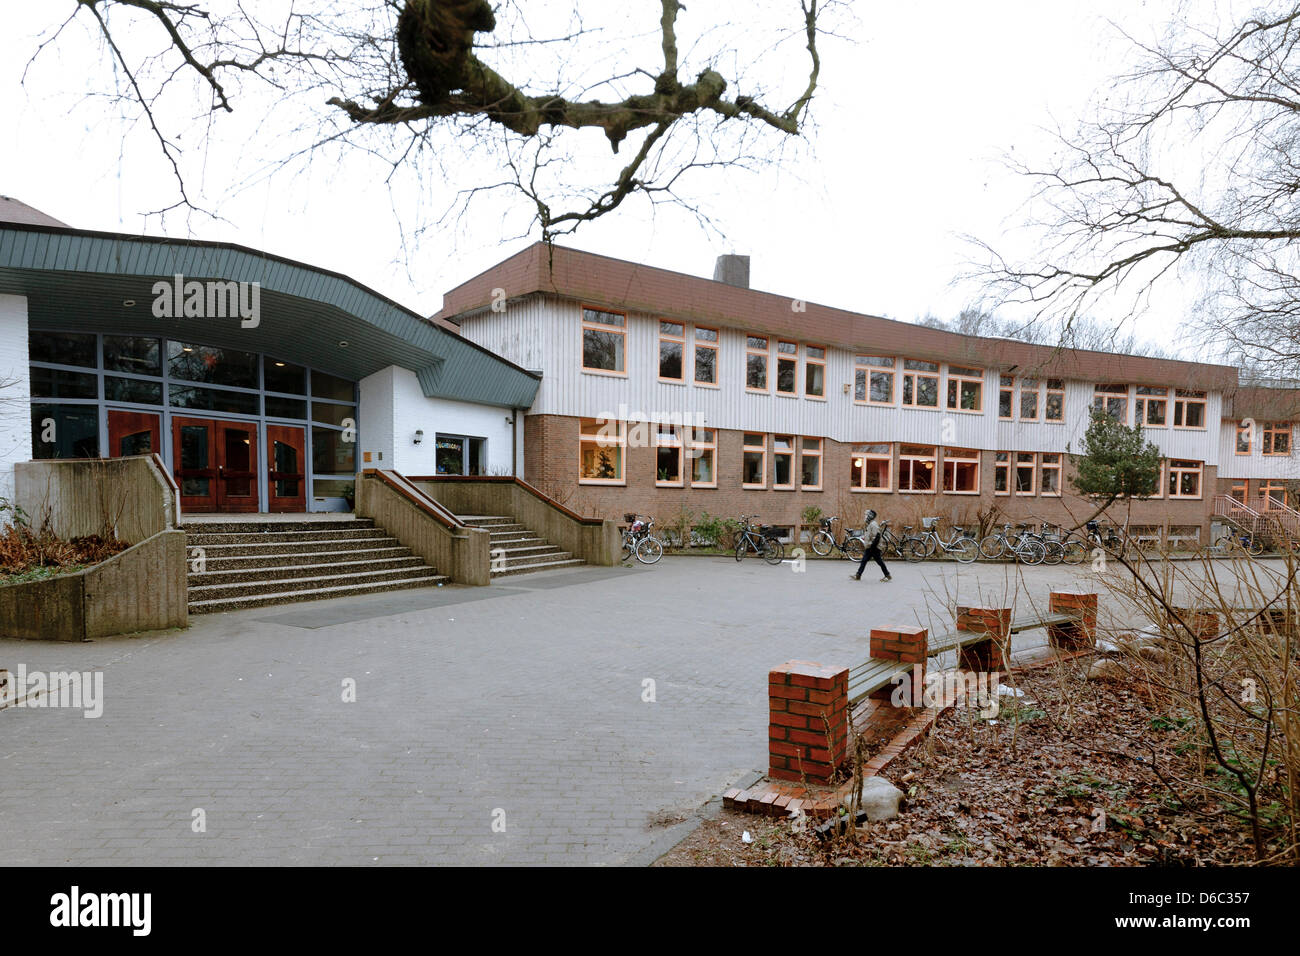 La zona di ingresso della Freie Waldorfschule school è raffigurato in Luebeck, Germania, 11 gennaio 2012. Il pubblico ministero sta studiando un insegnante presso questa scuola che ha costruito una pipebomb con gli studenti e li off. Foto: Markus Scholz Foto Stock